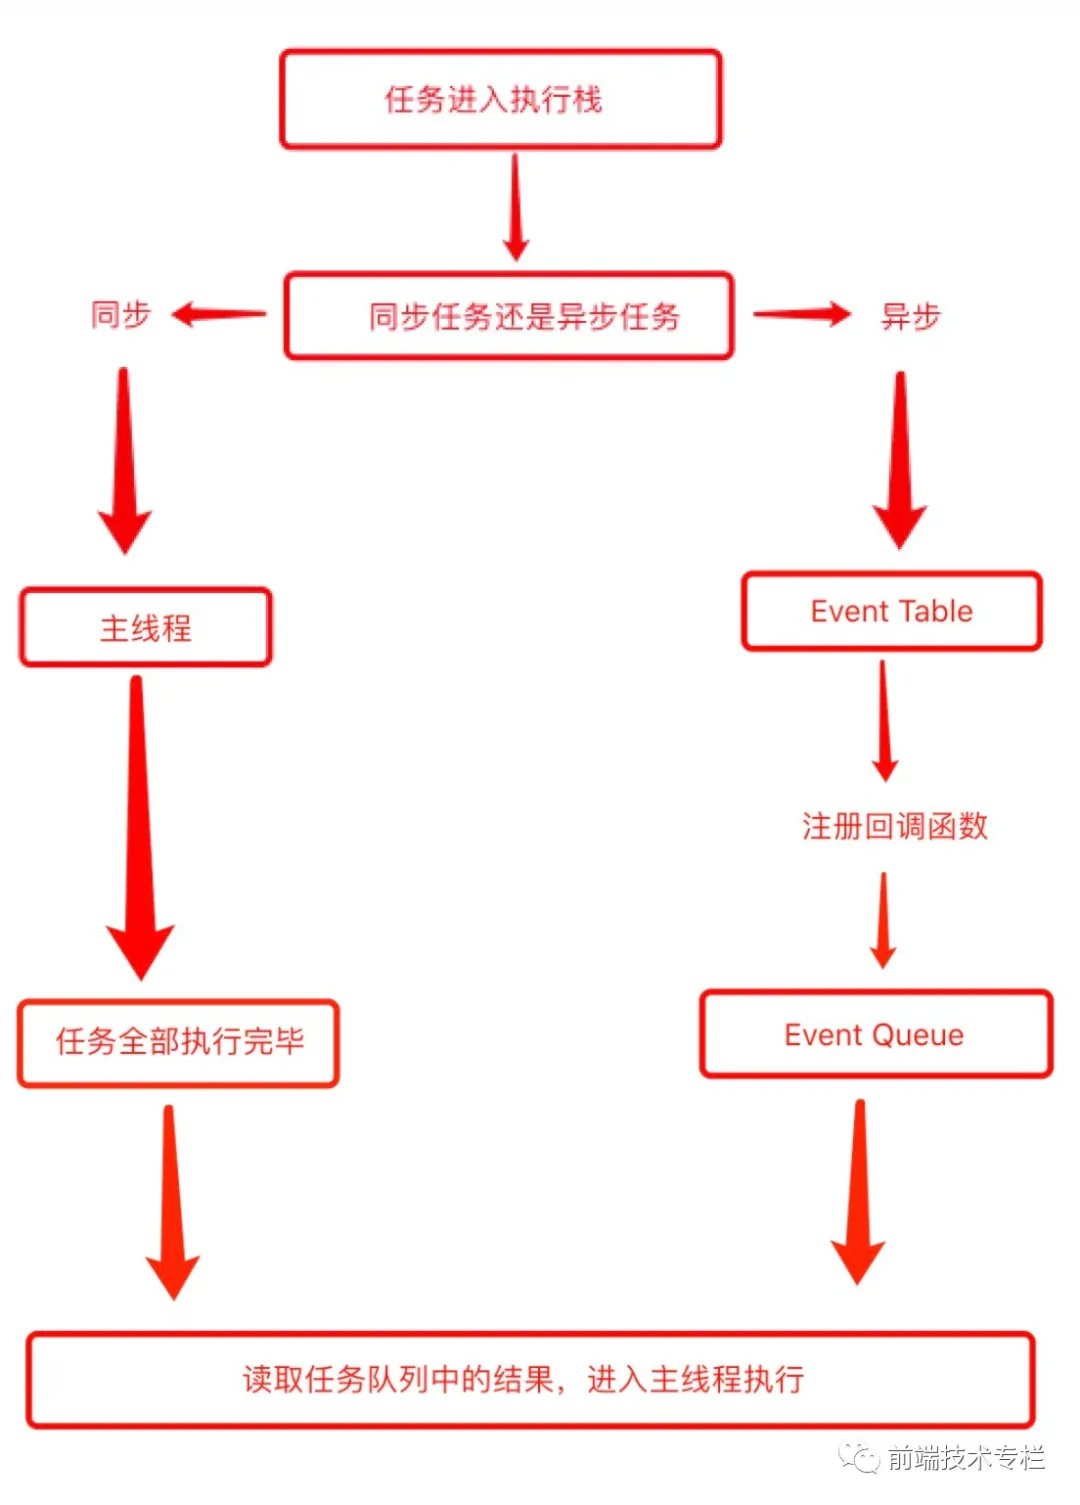 吴佳前端博客 event loop1